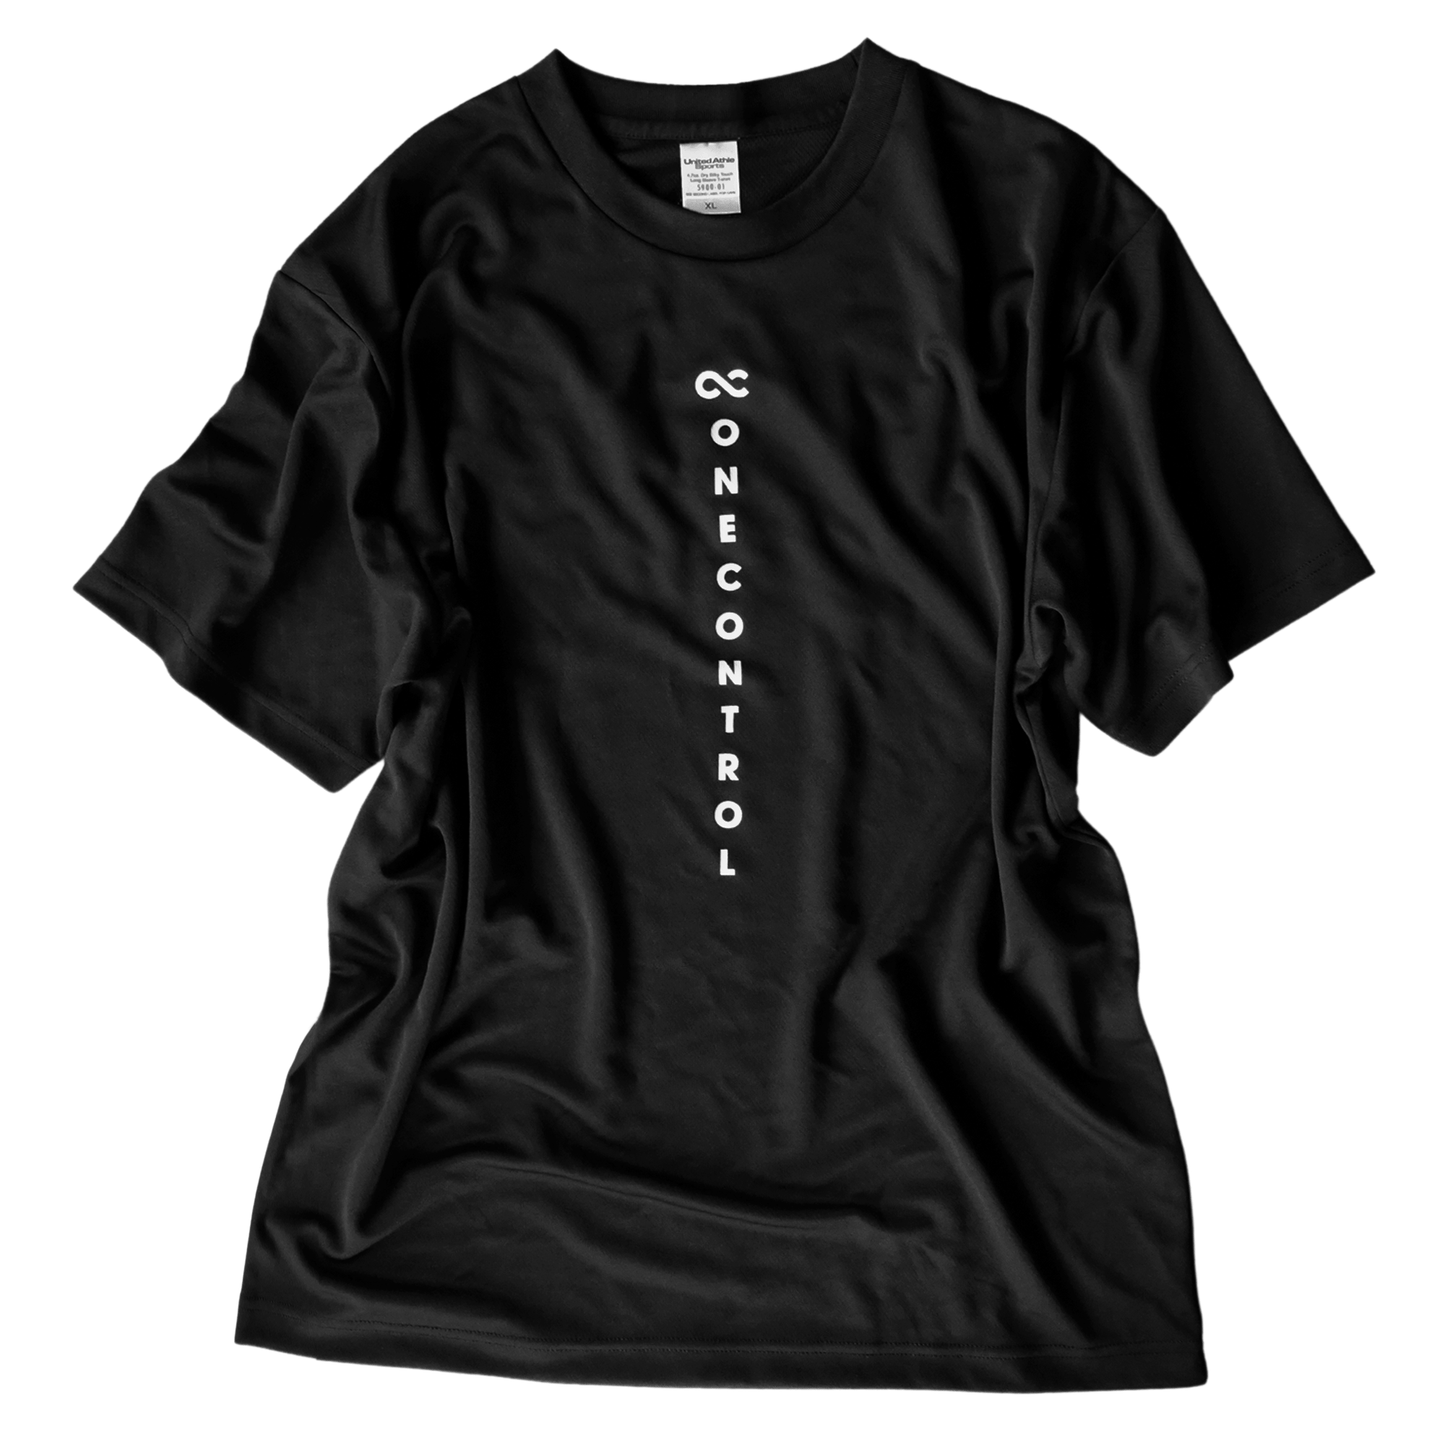 One Control / ロゴTシャツ ブラック